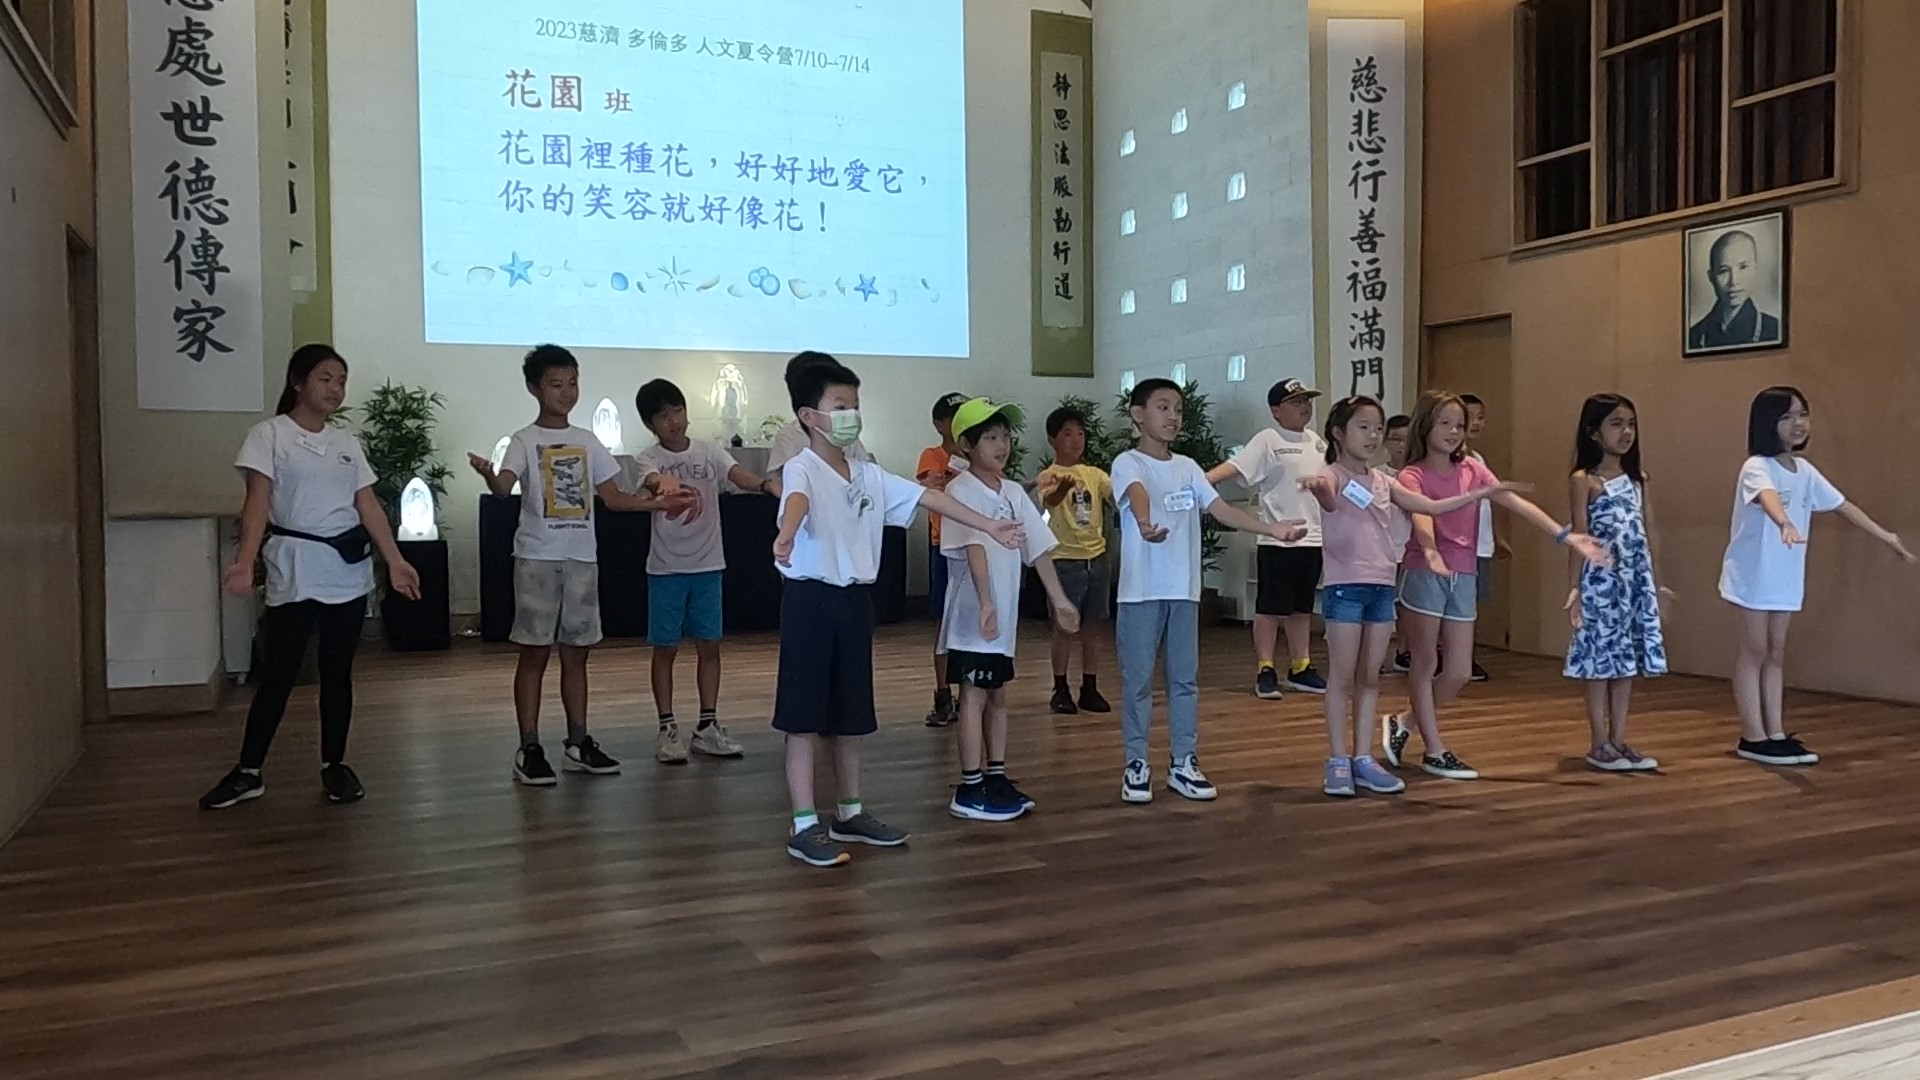 學員們在唱歌表演